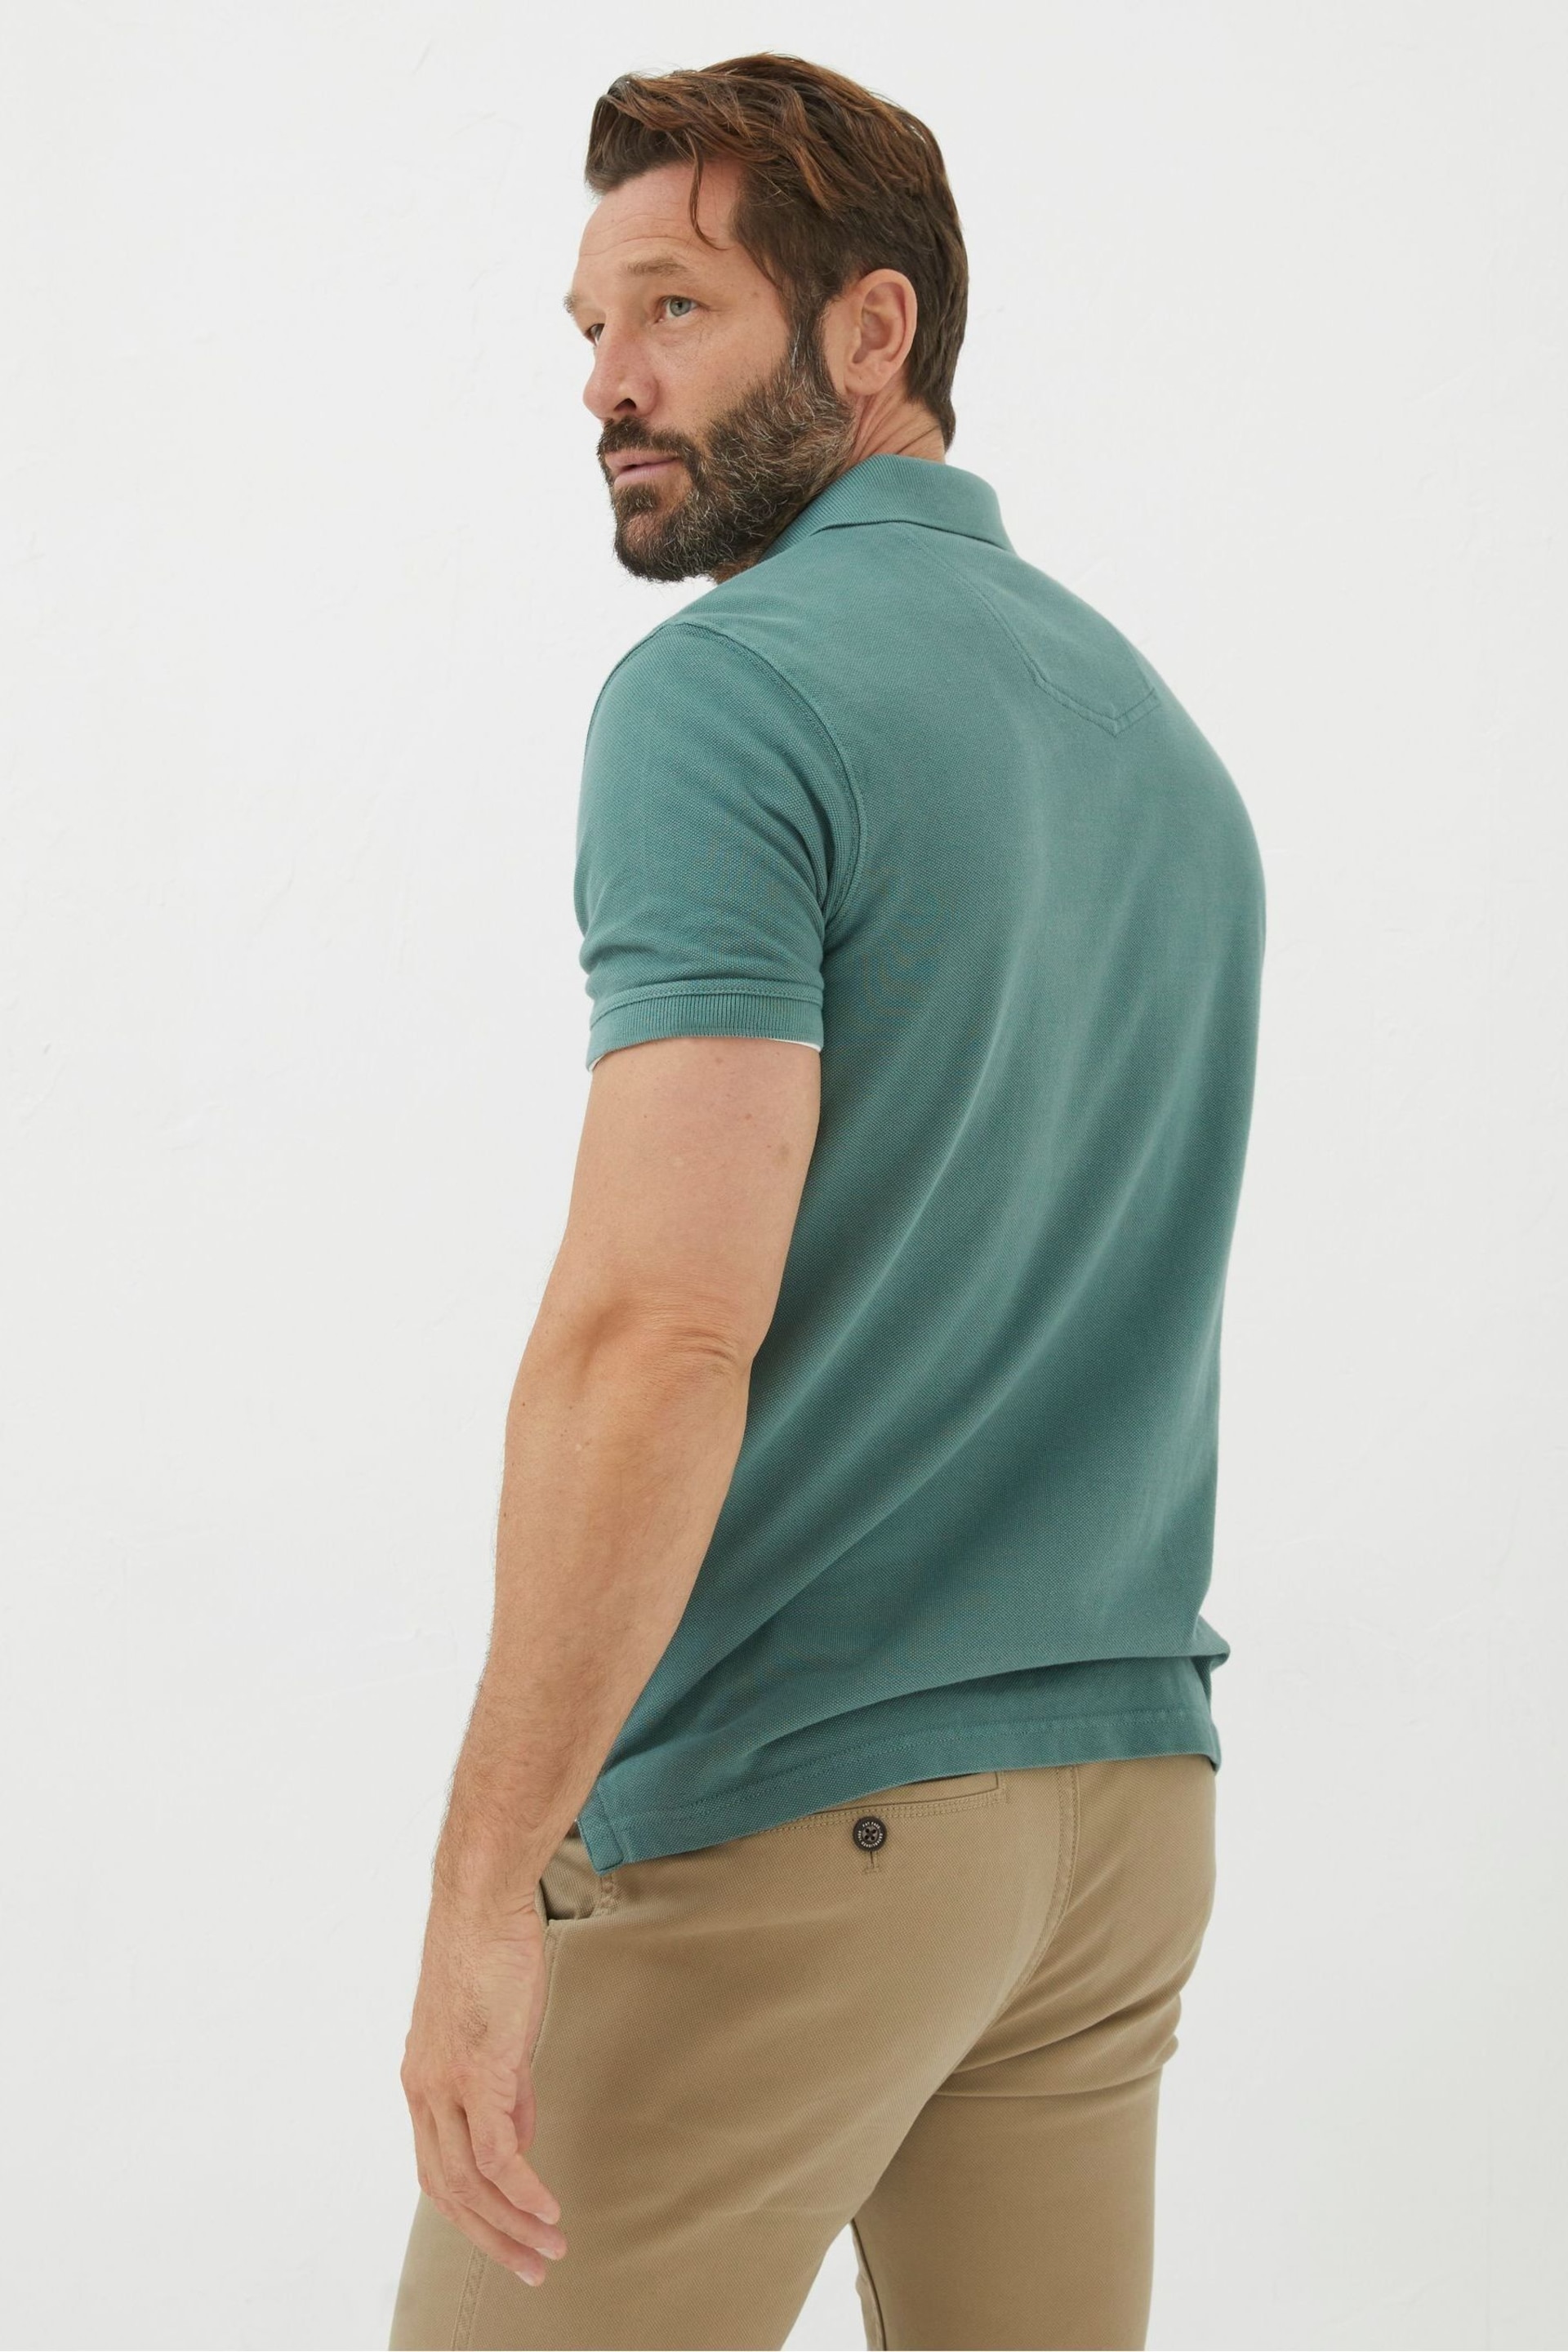 FatFace Green Pique Polo Shirt - Image 2 of 4